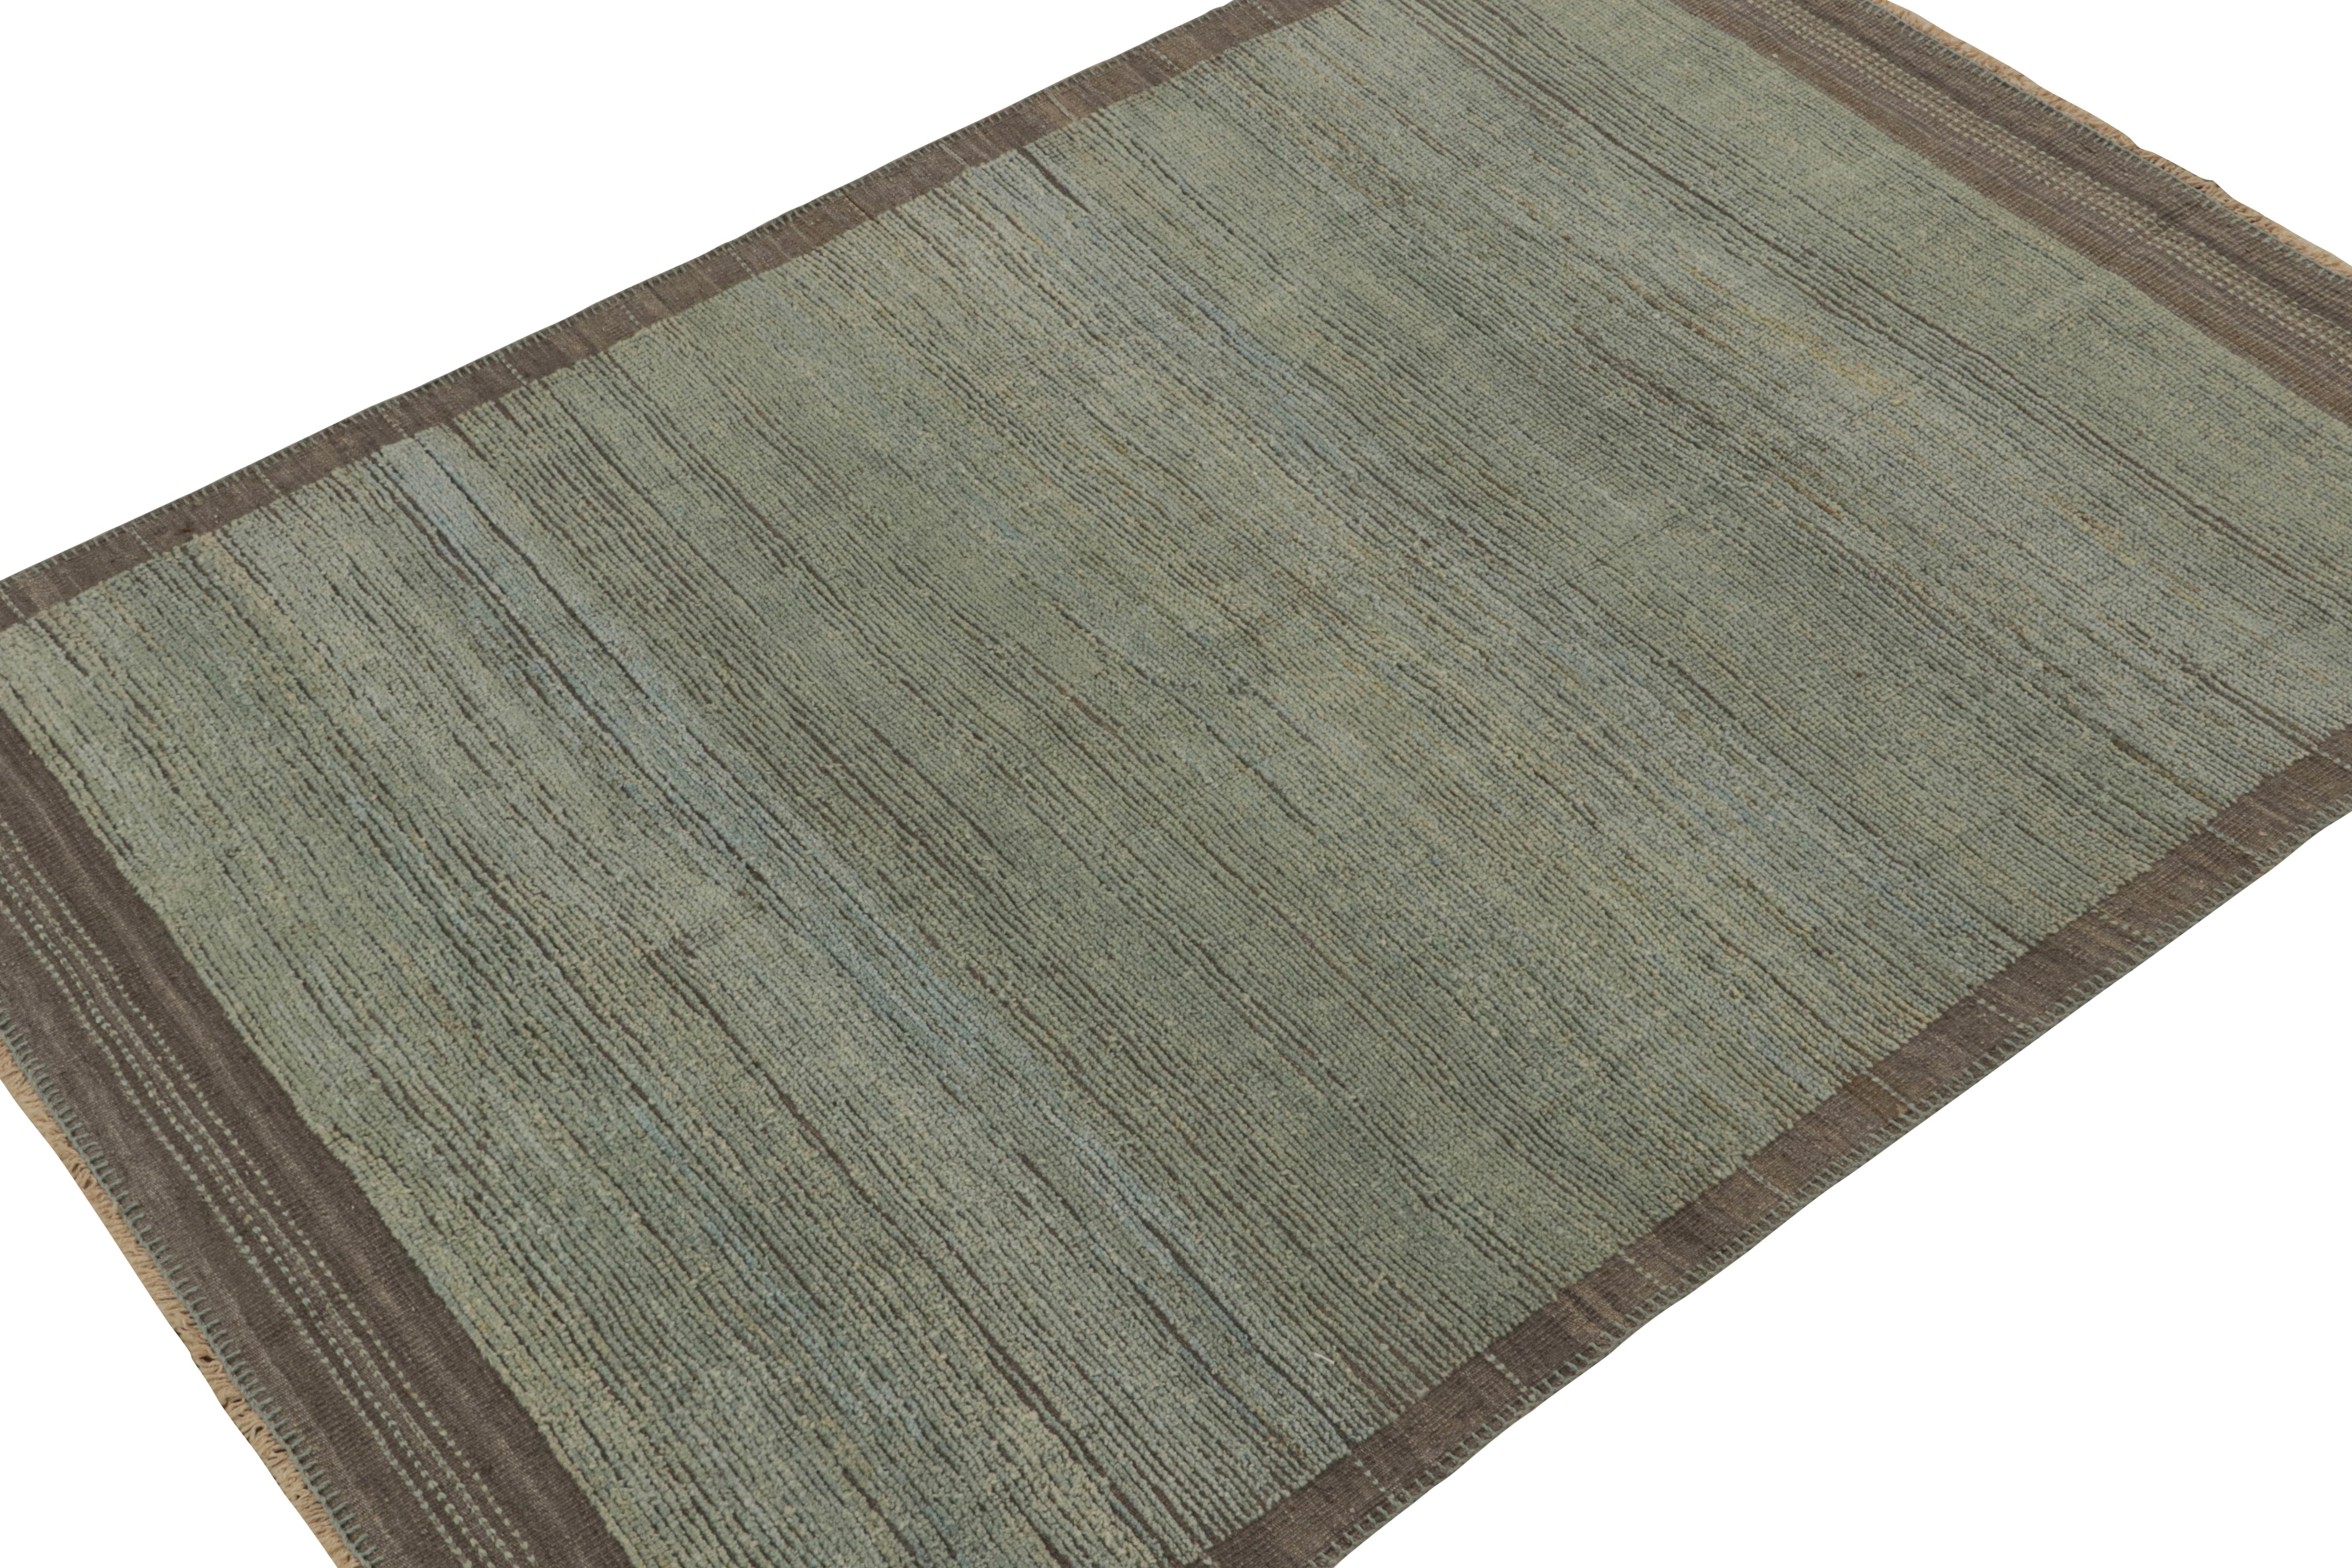 Dieser 6×8 große, handgewebte Wollteppich gehört zu einer neuen, kühnen Serie zeitgenössischer Teppiche von Rug & Kilim.

Weiter zum Design:

Diese neue Ergänzung zu 